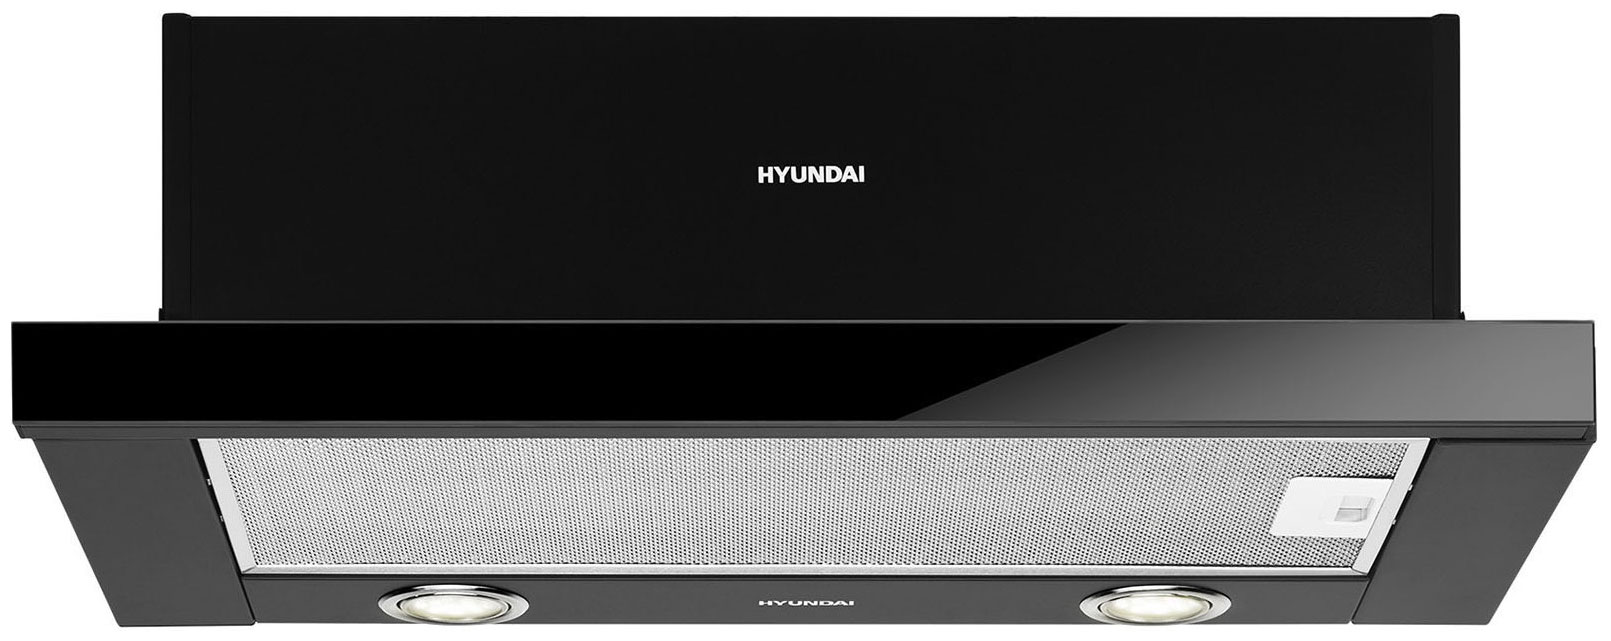 Вытяжка Hyundai HBH 6236 BG черный встраиваемая вытяжка hyundai hbh 6230 bk